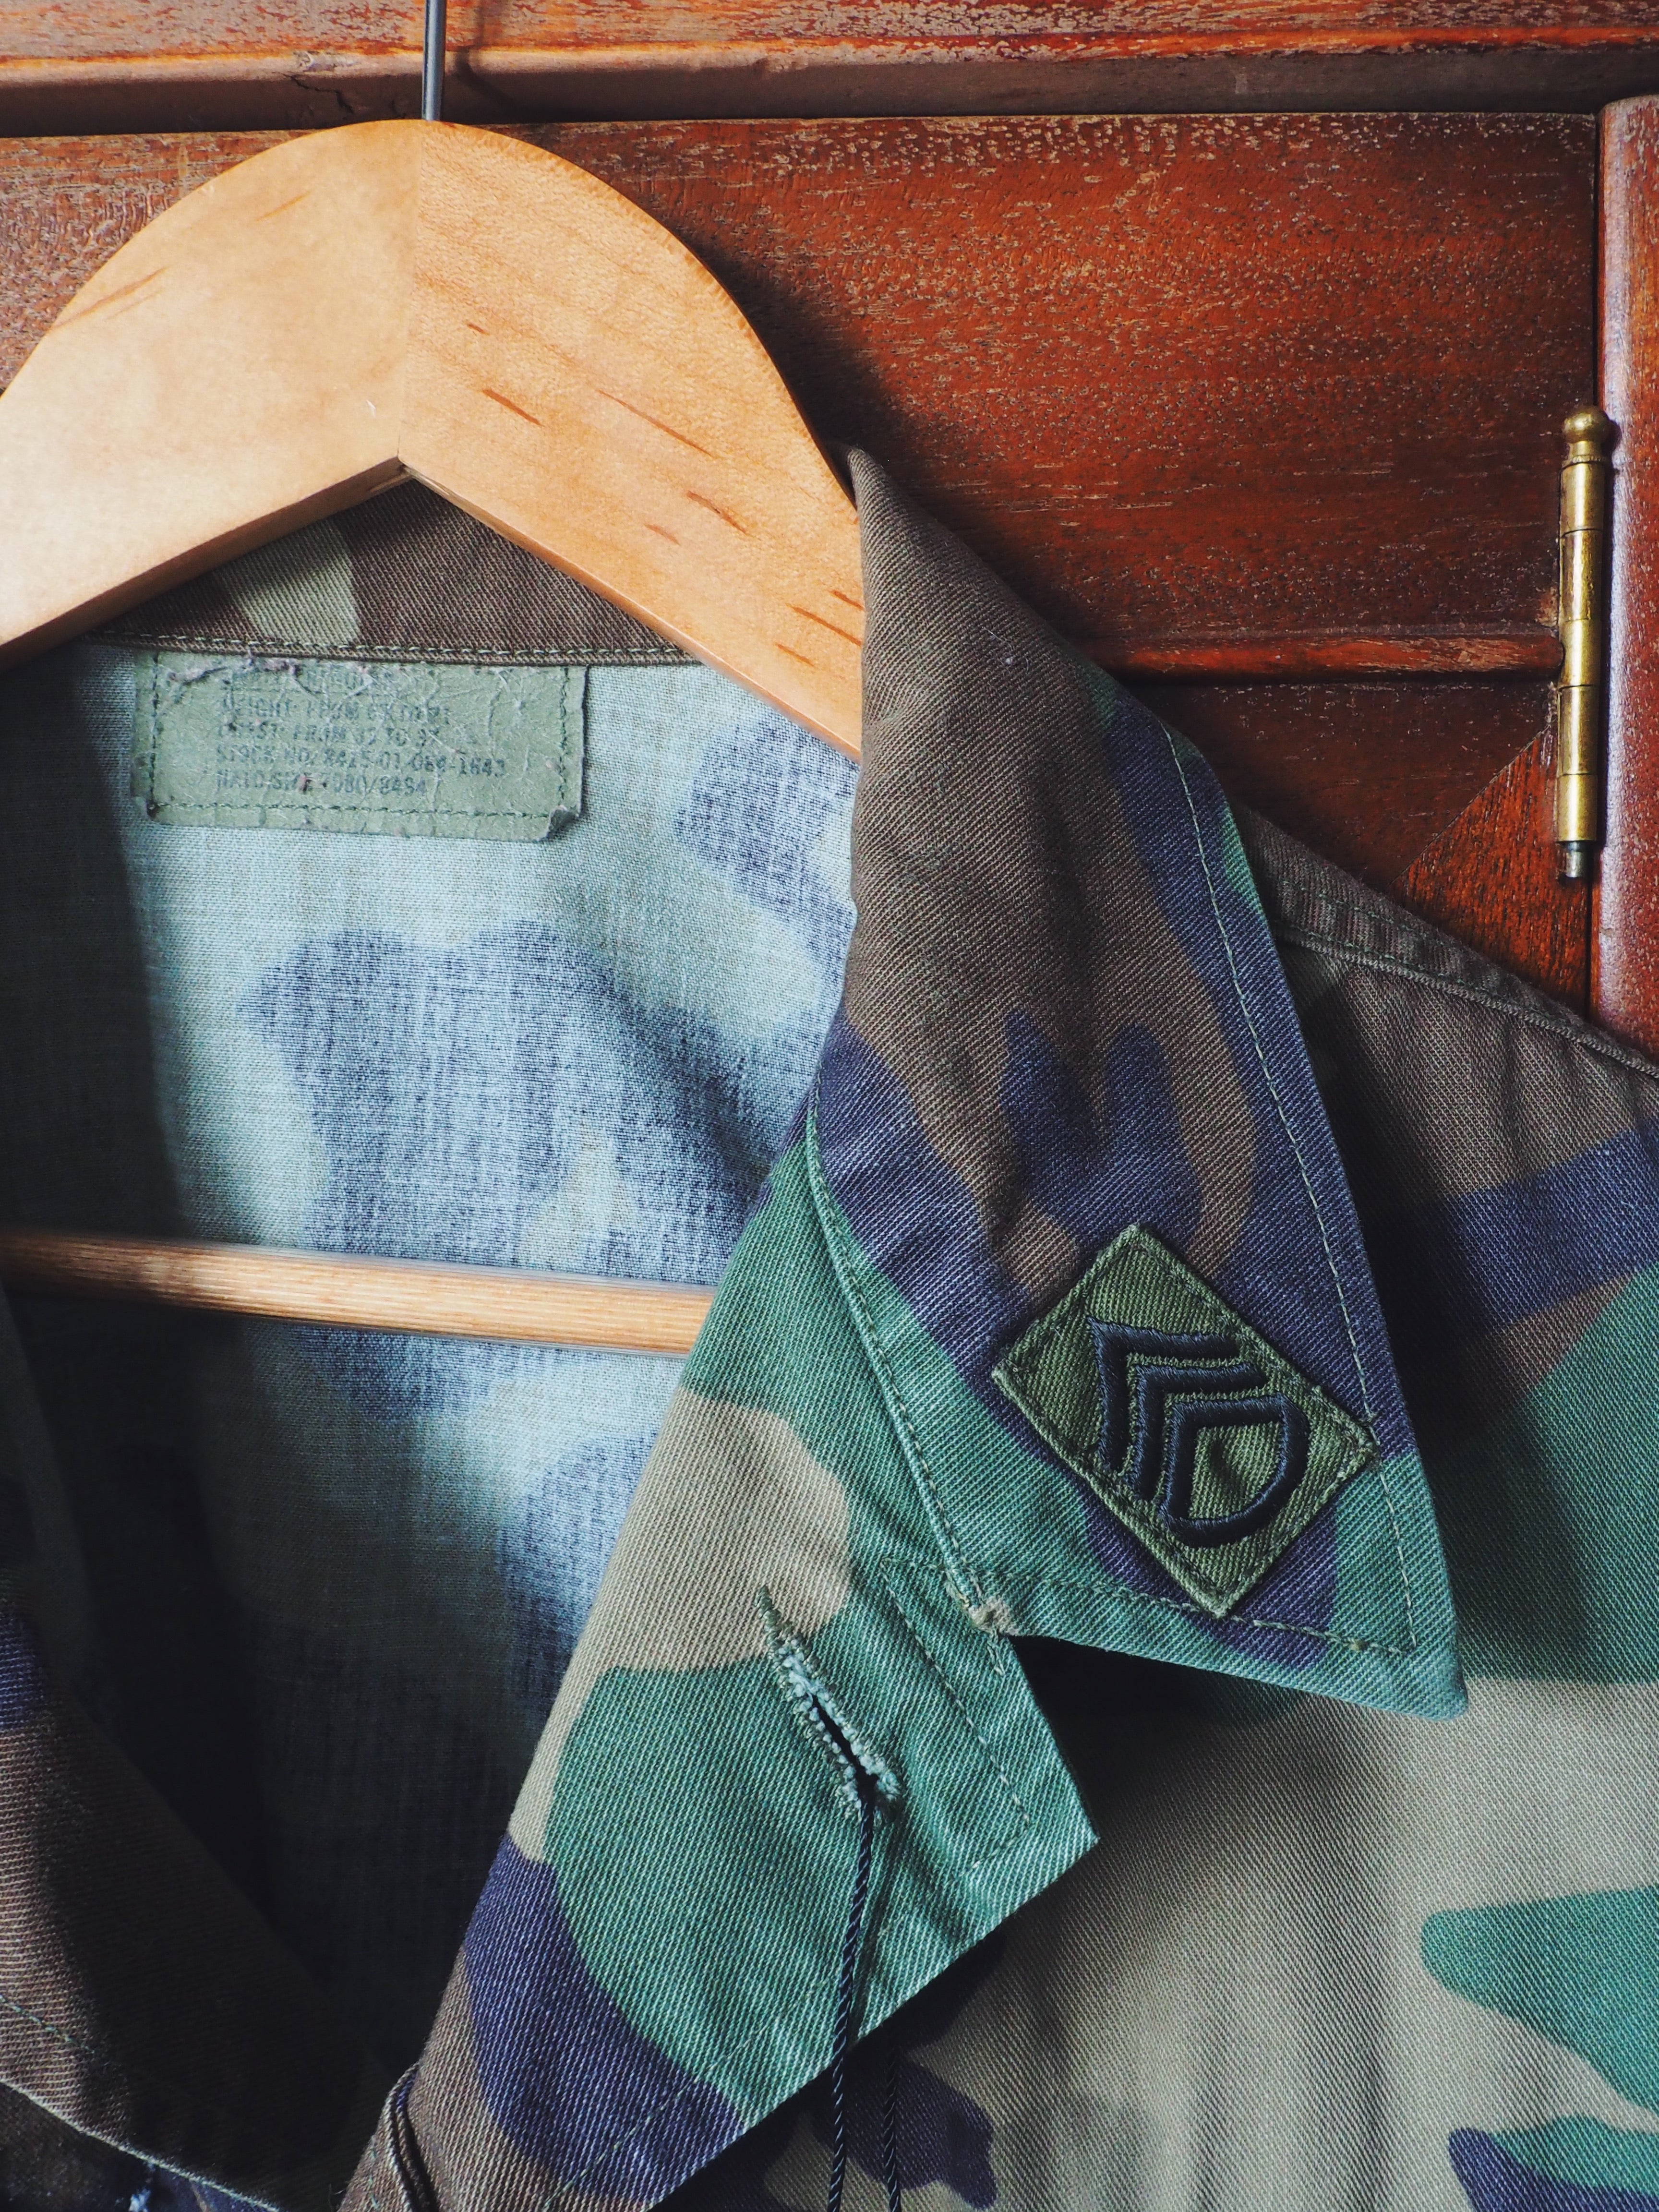 Vintage U.S Army Camo Jacket